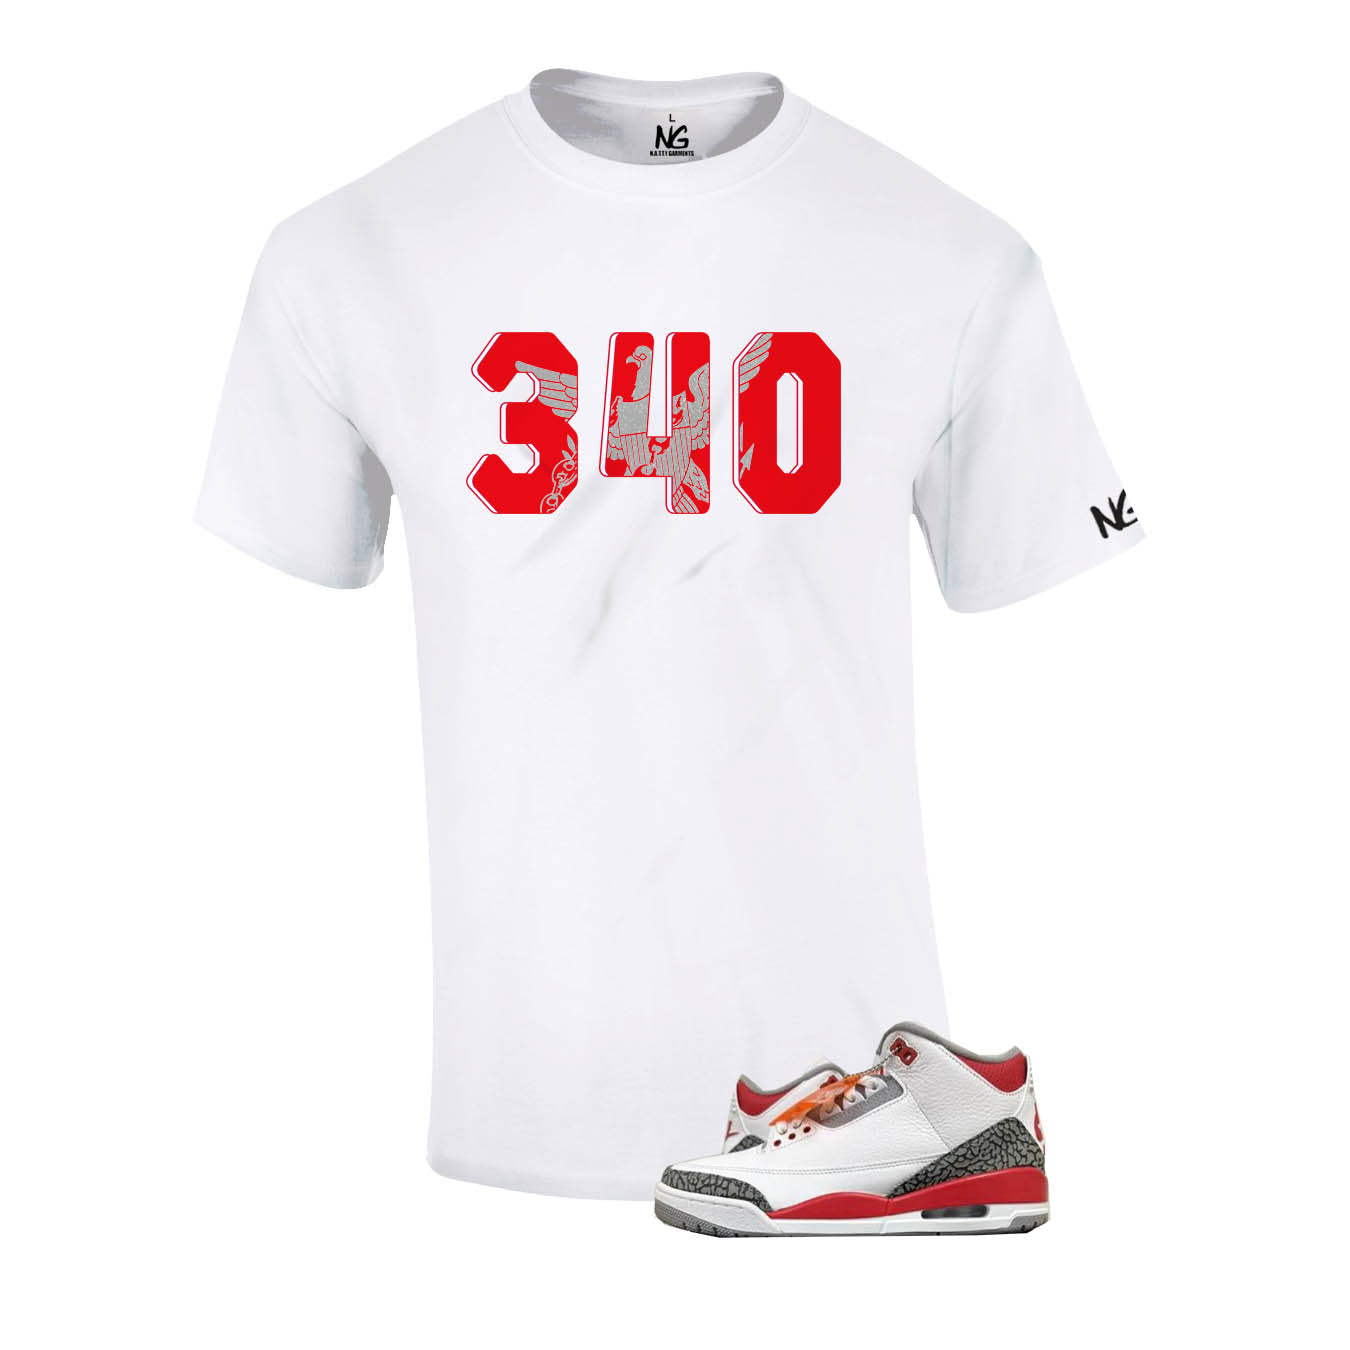 340 Sneaker Shirt (Fire Red)